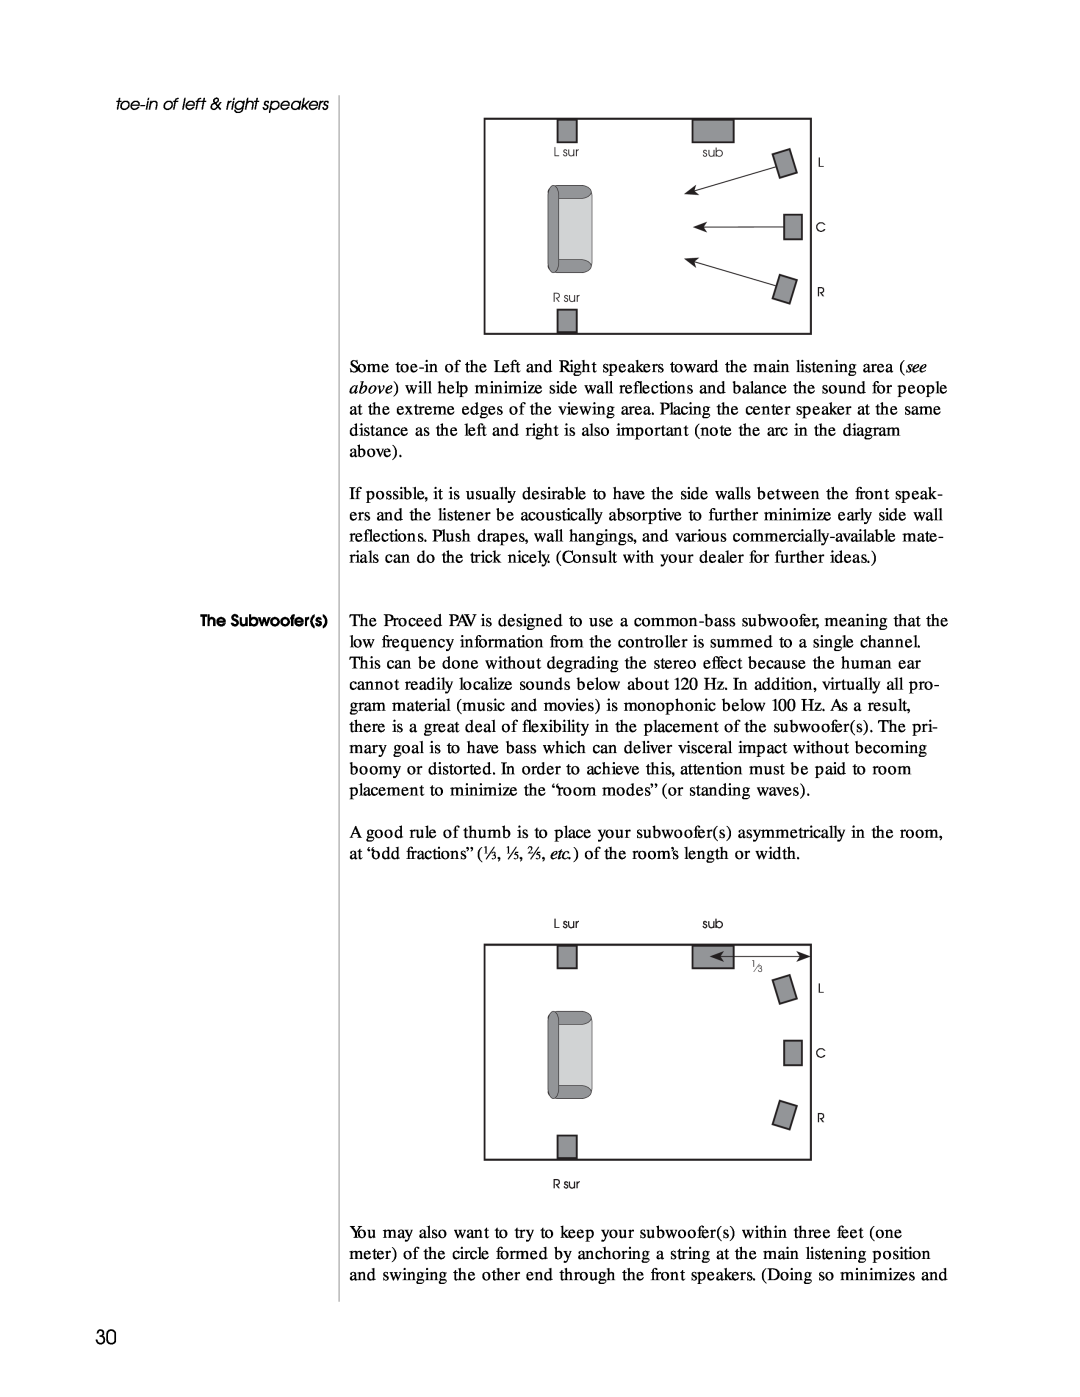 Madrigal Imaging Audio/Video Preamplifier manual L sur, L C R R sur 